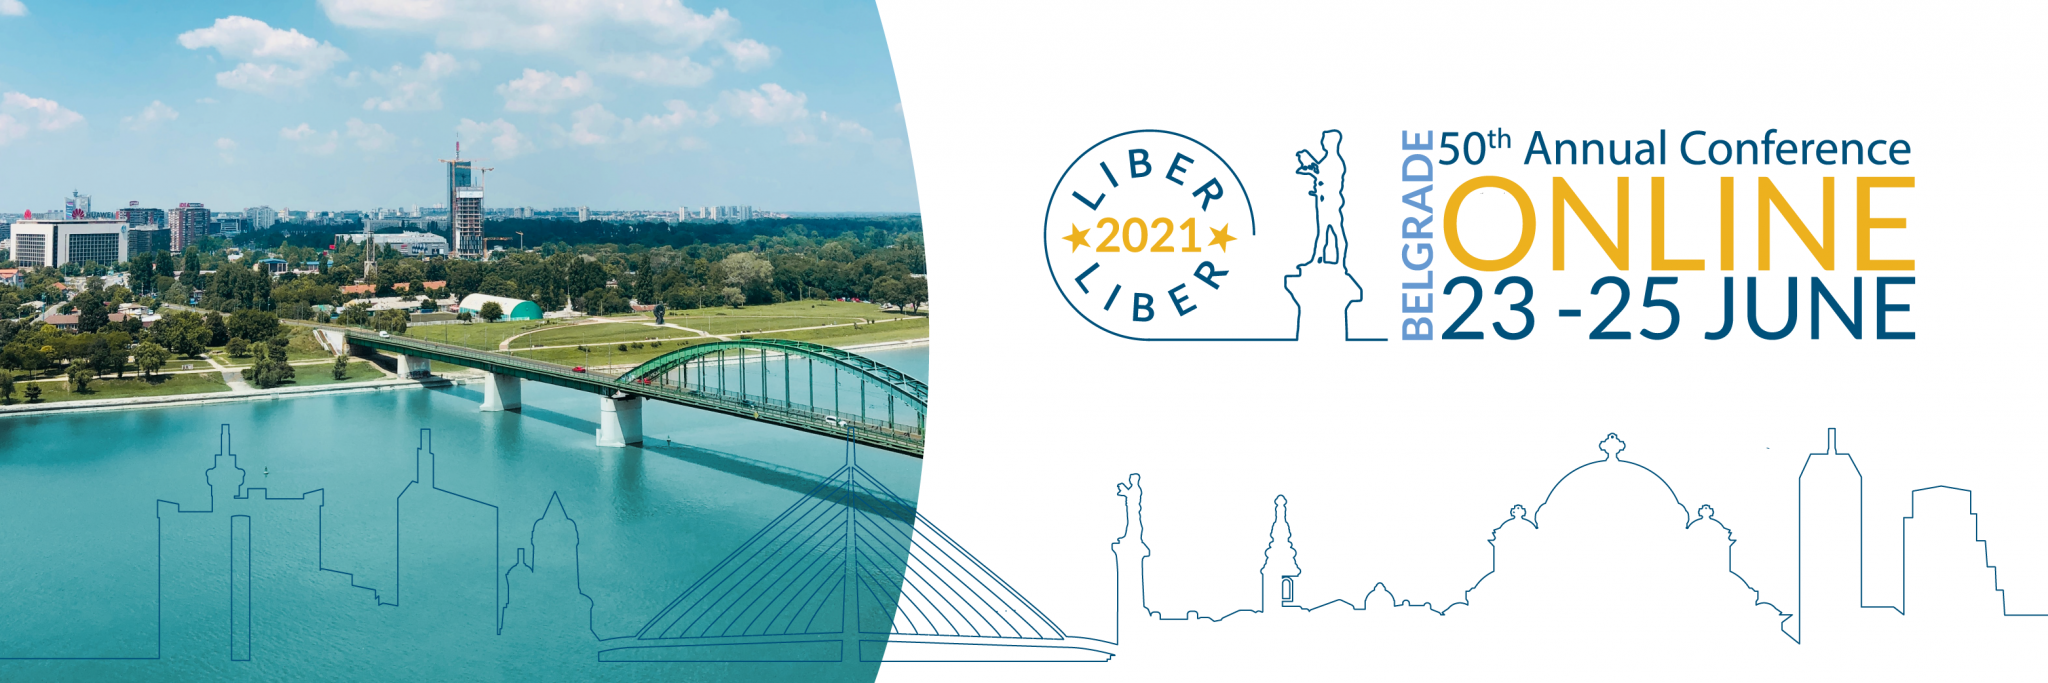 La bibliothèque de l'université de Belgrade en Serbie abrite virtuellement le congrès Liber 2021